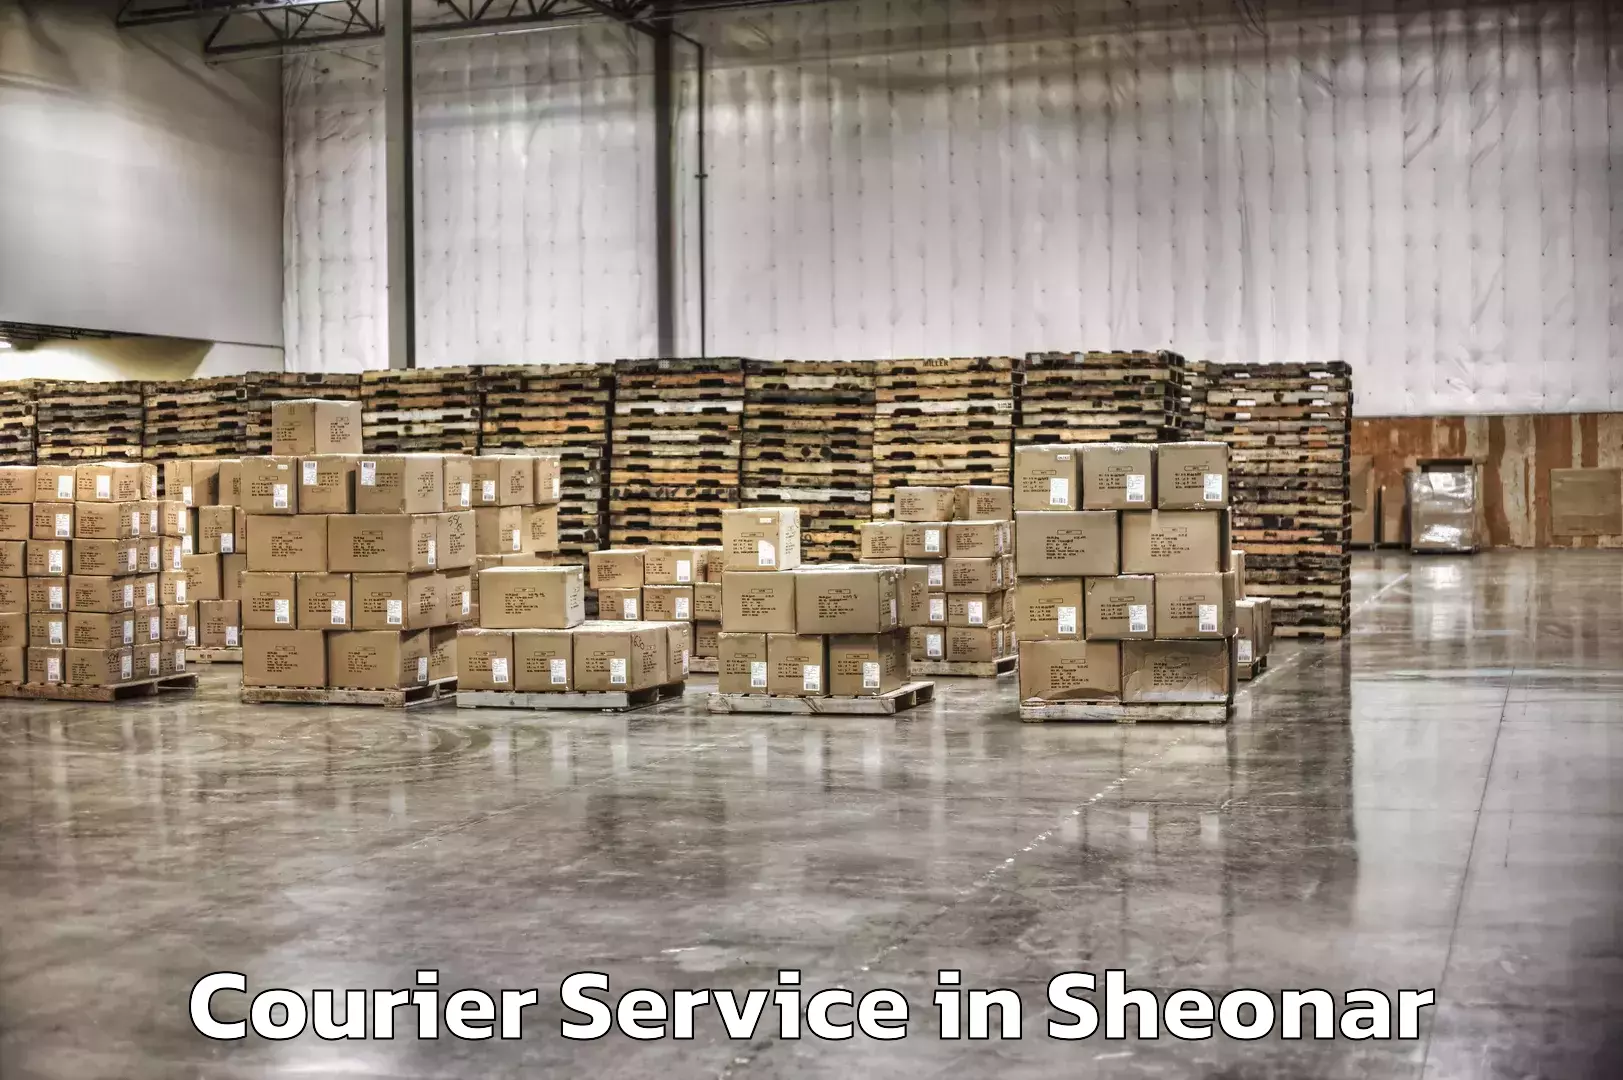 Smart parcel delivery in Sheonar